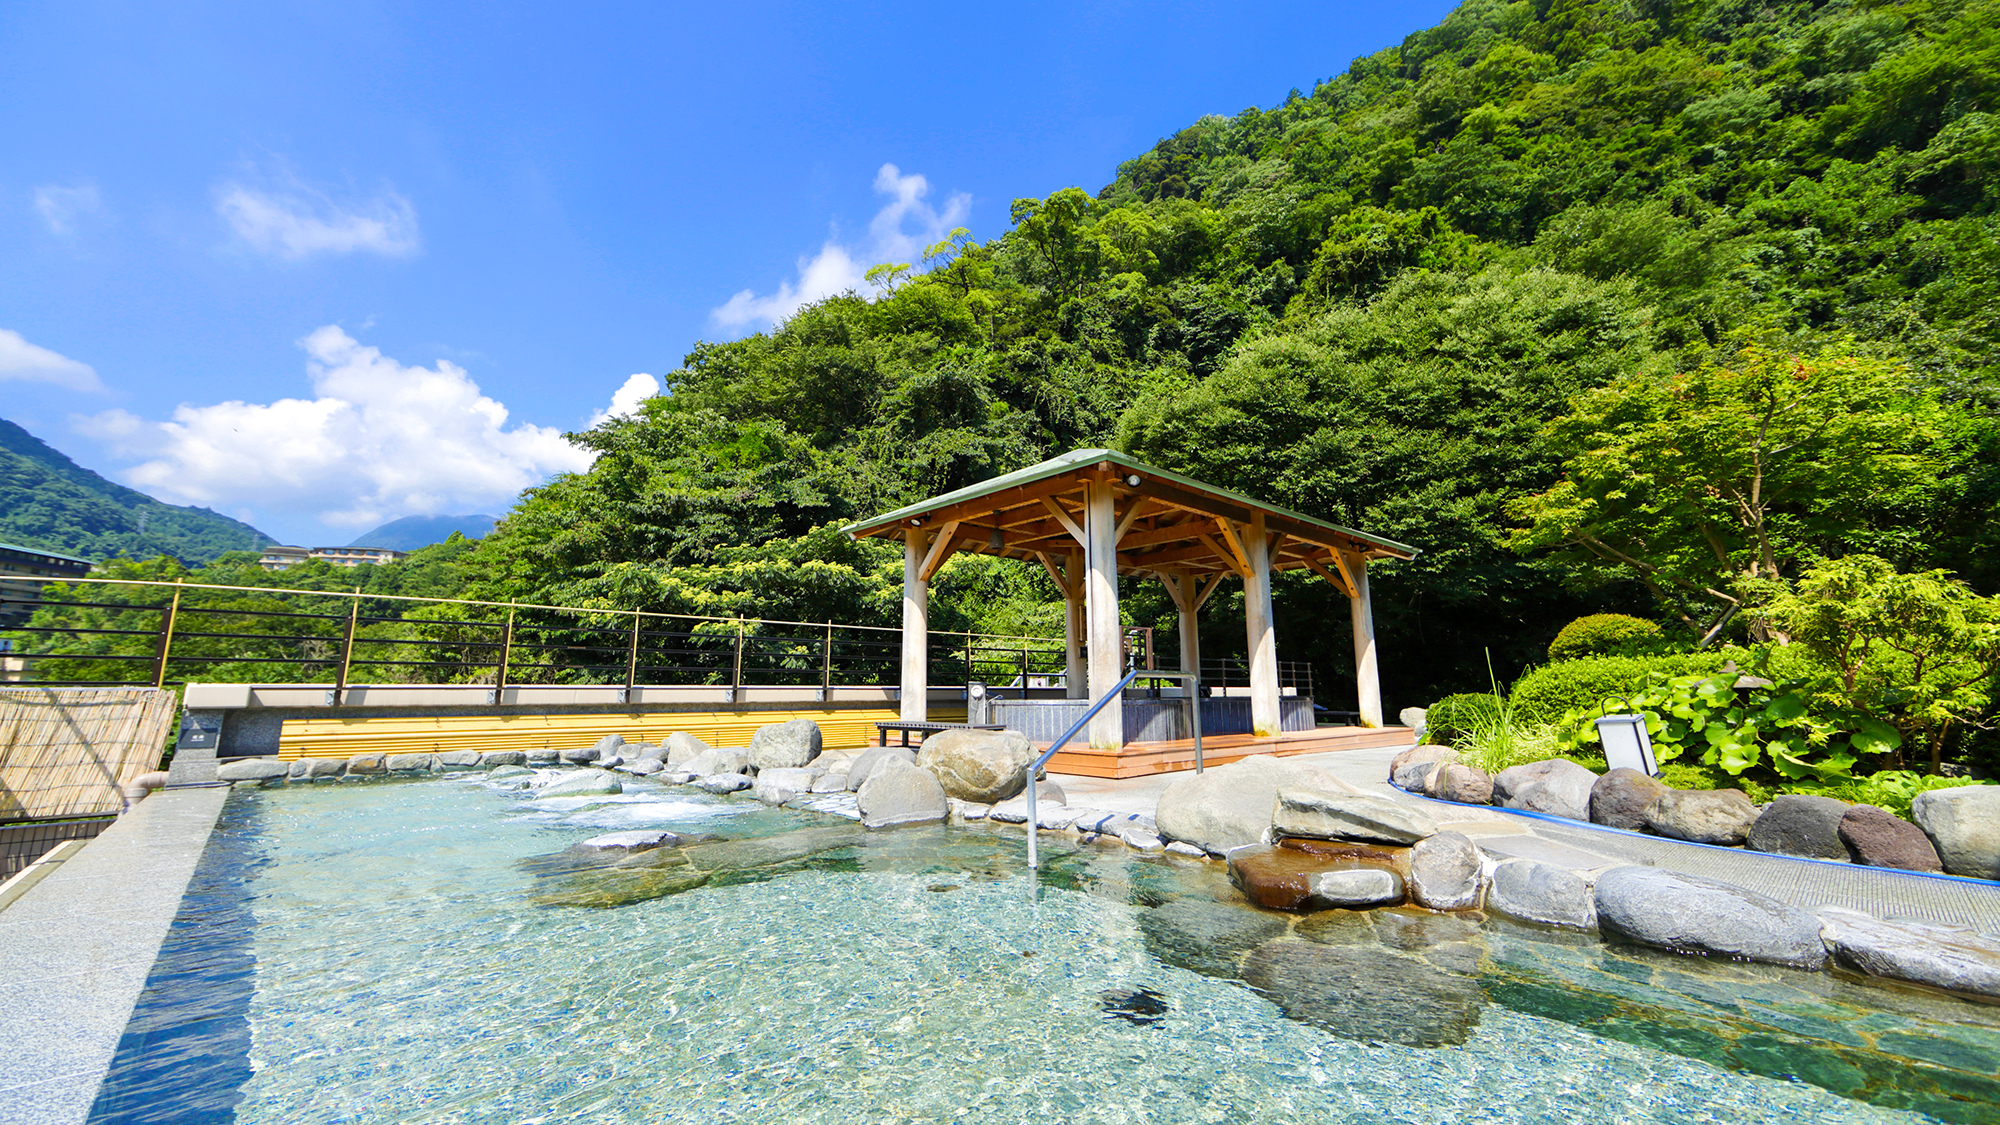 【天空露天風呂】箱根の豊かな四季を望みながら、温泉を楽しむ贅沢なひととき